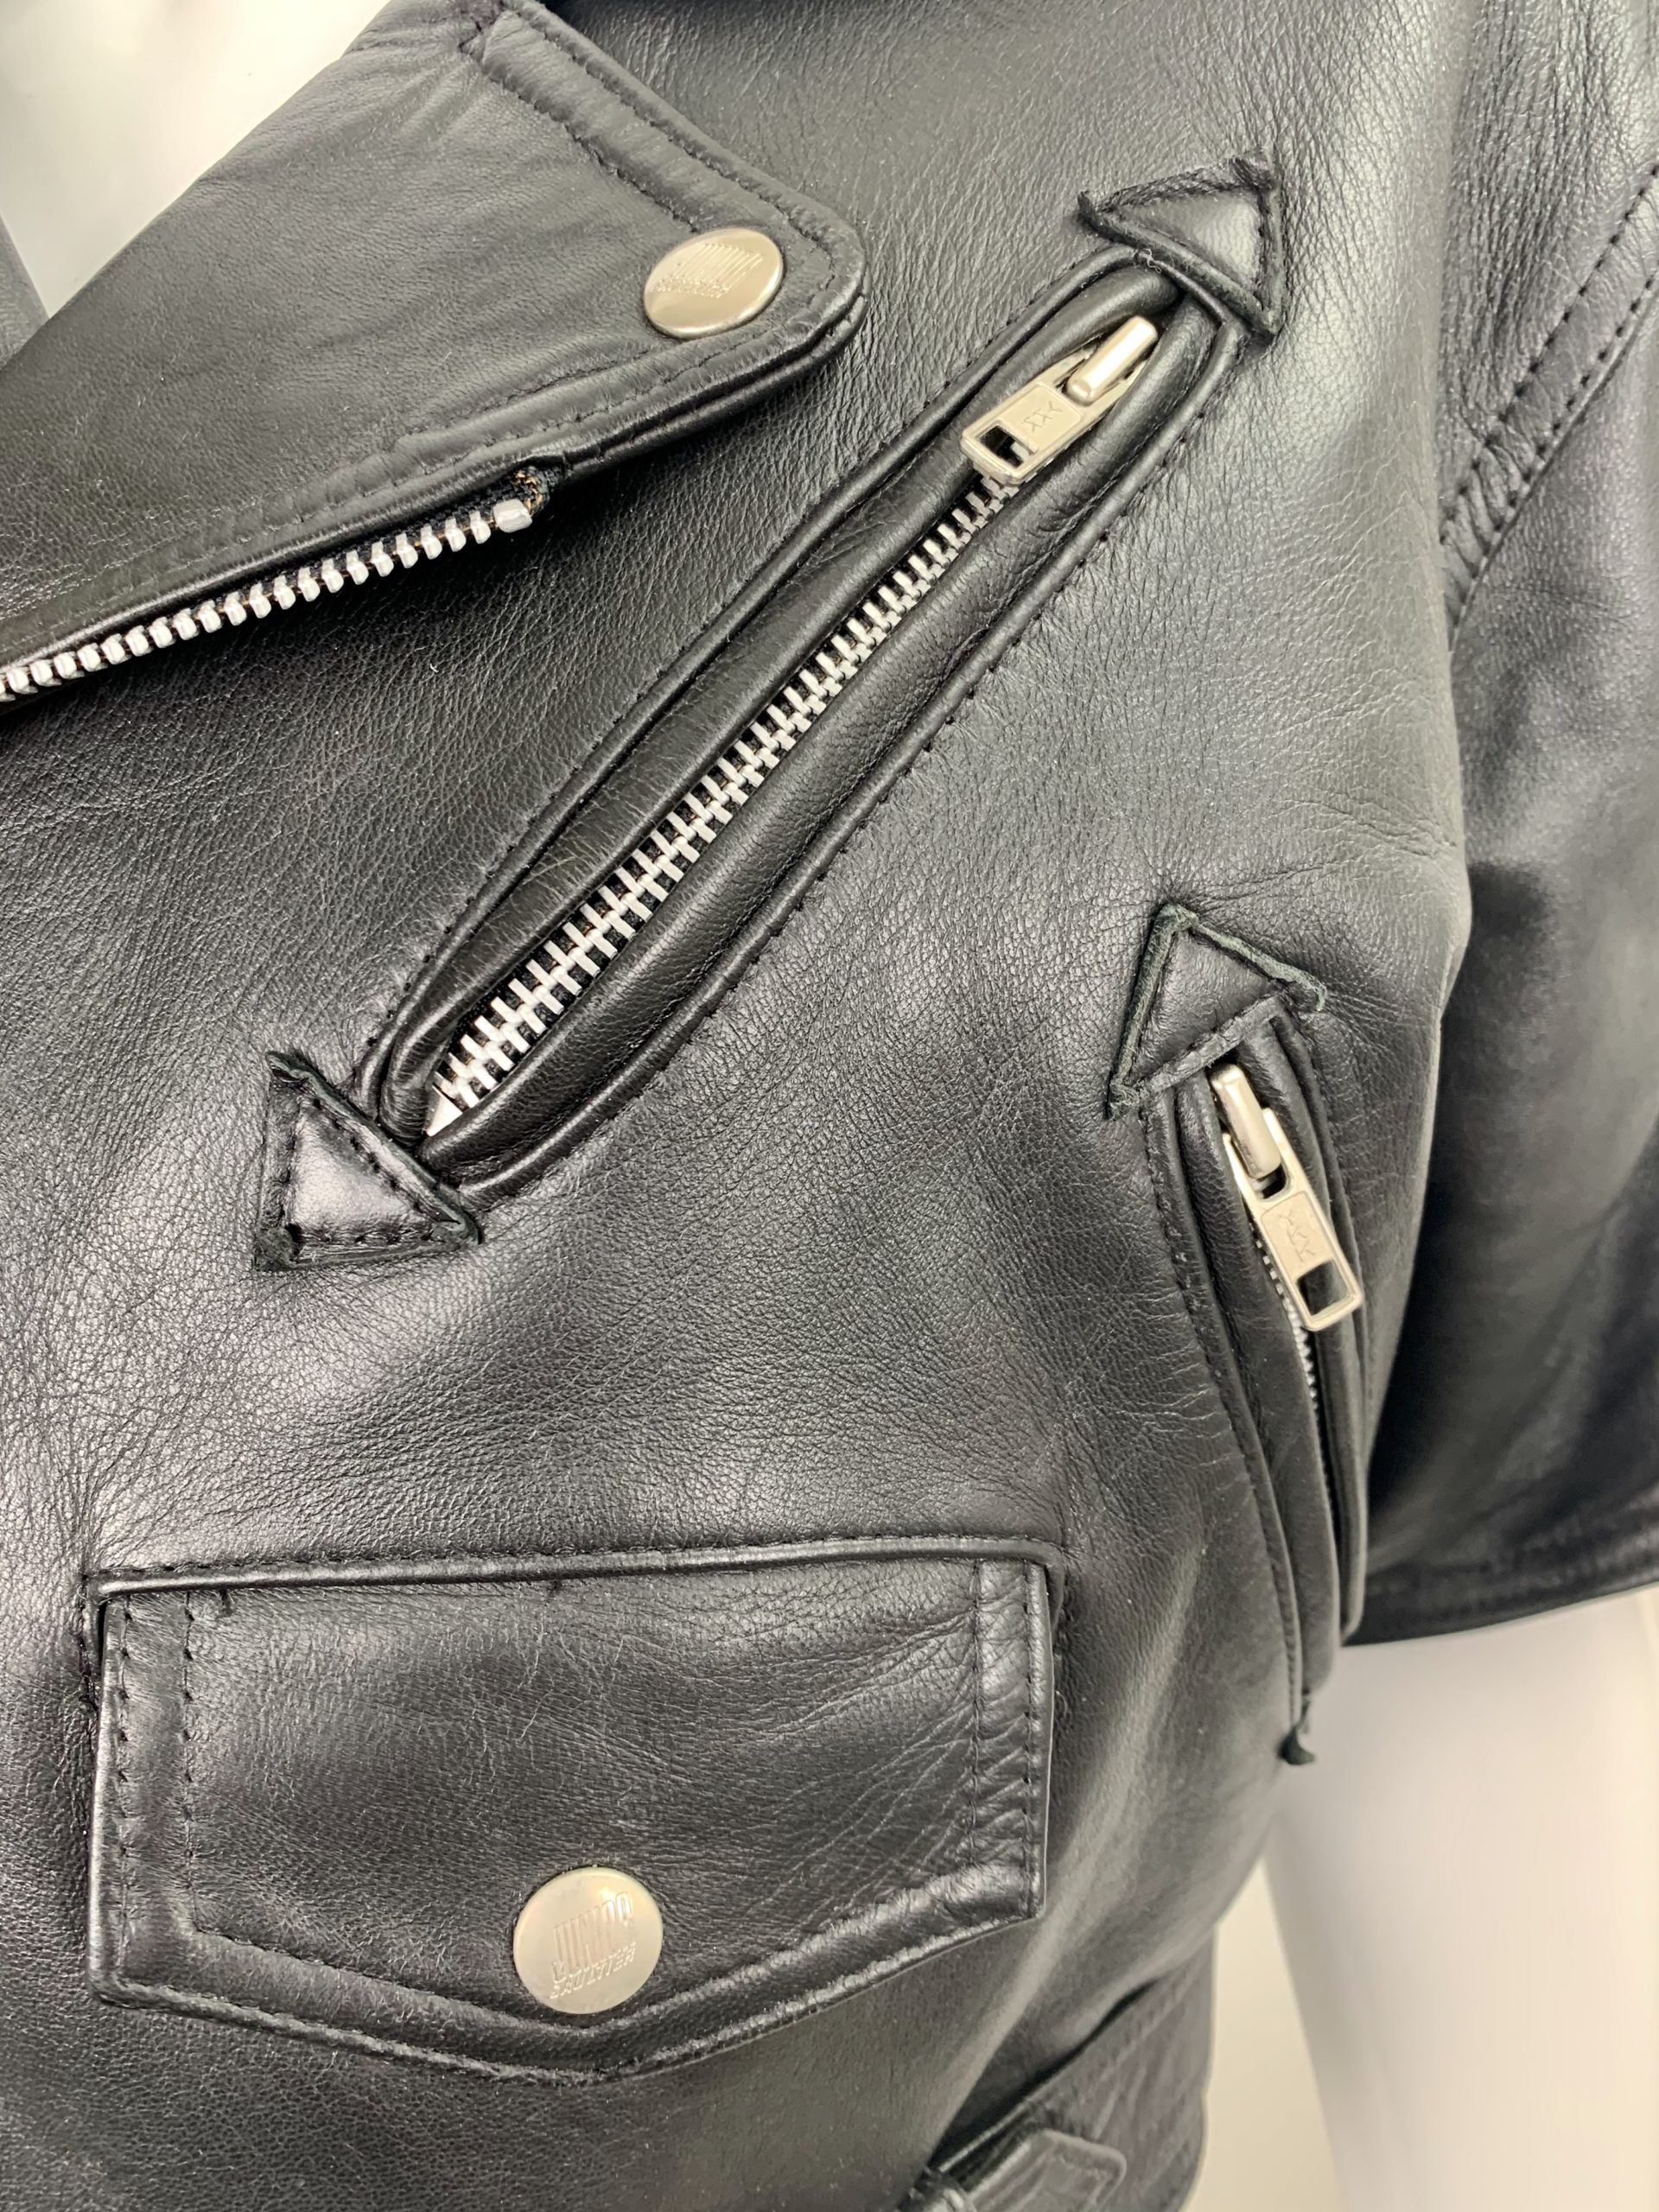 Jean Paul Gaultier 80's leather biker jacket - Rellik